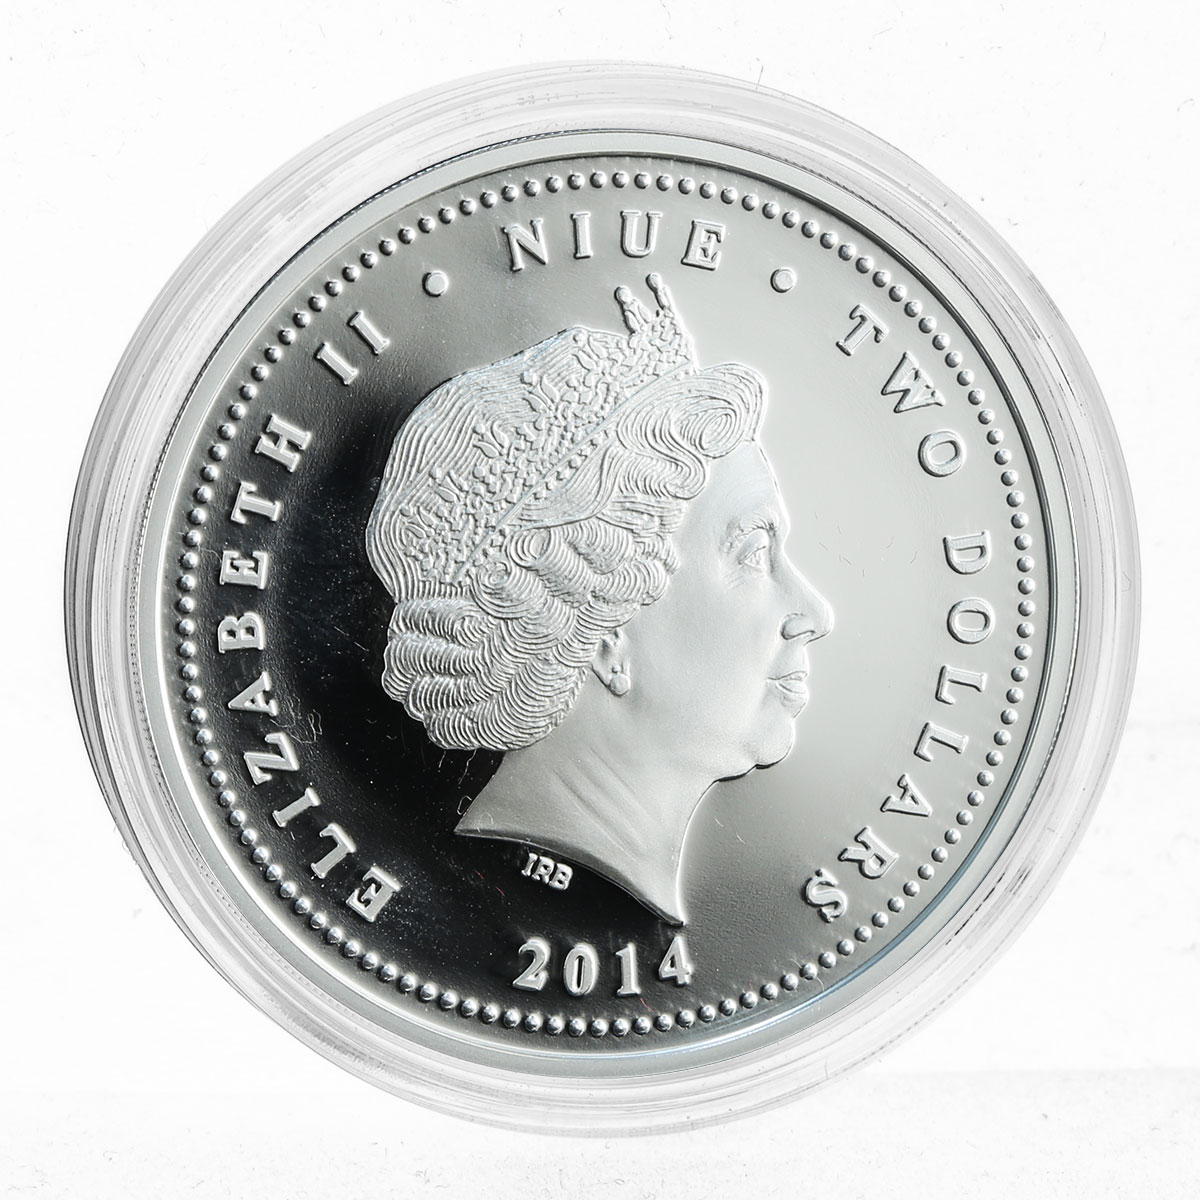 Niue 2 dollars Love is Precious Heart Shaped Love Swans silver 1 oz coin 2014